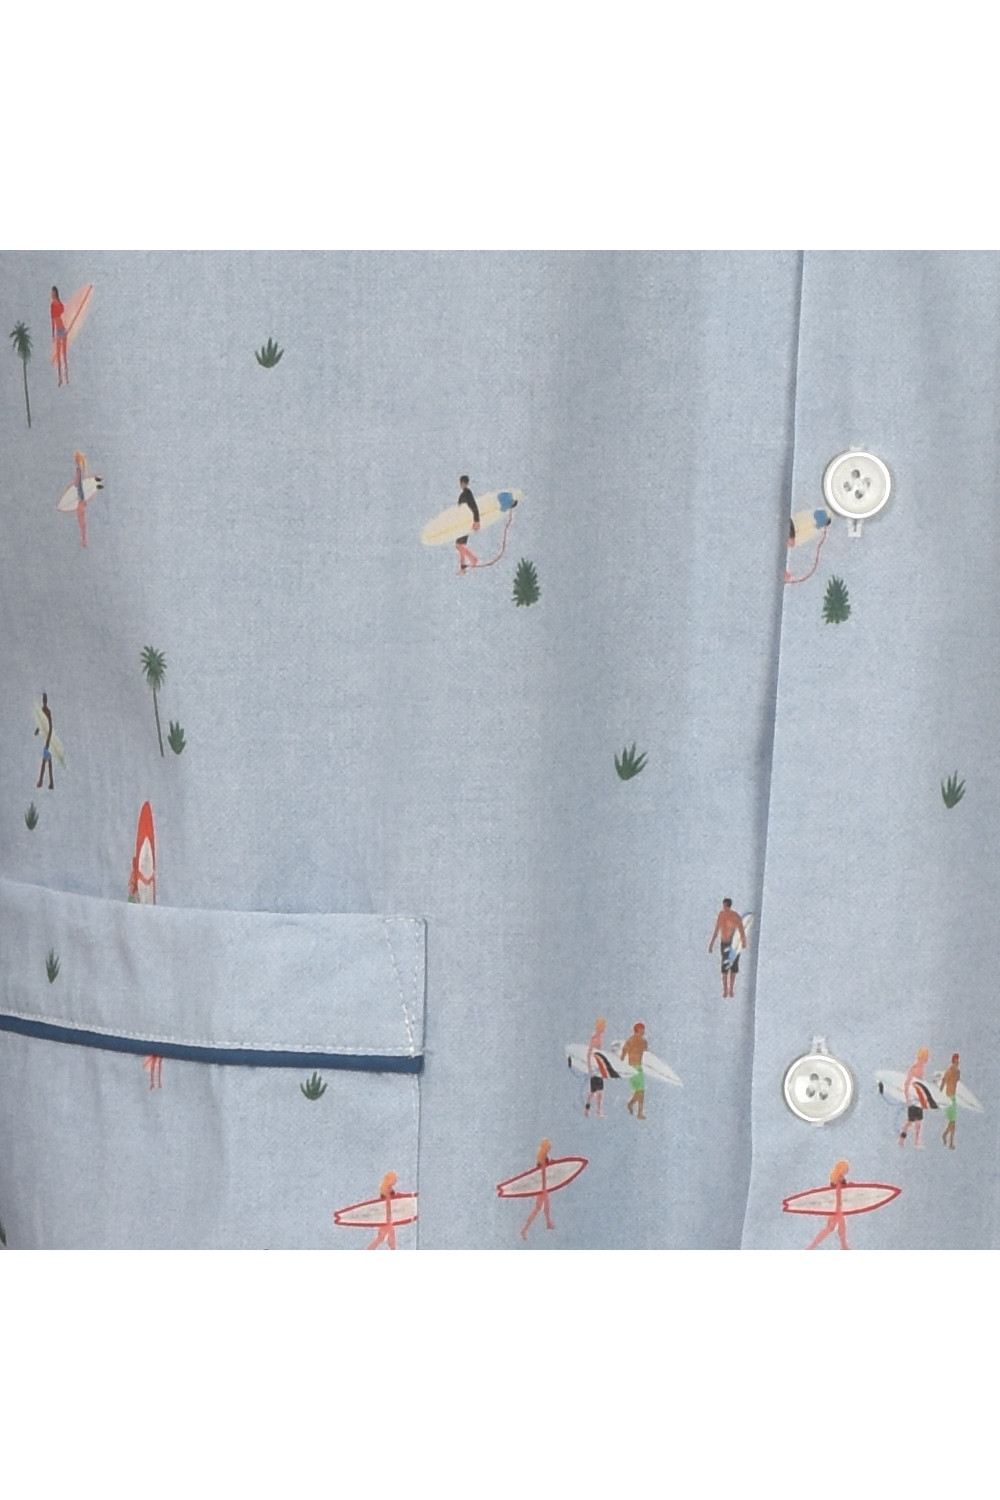 Pyjama pour homme court en popeline 100% coton, tissu original La